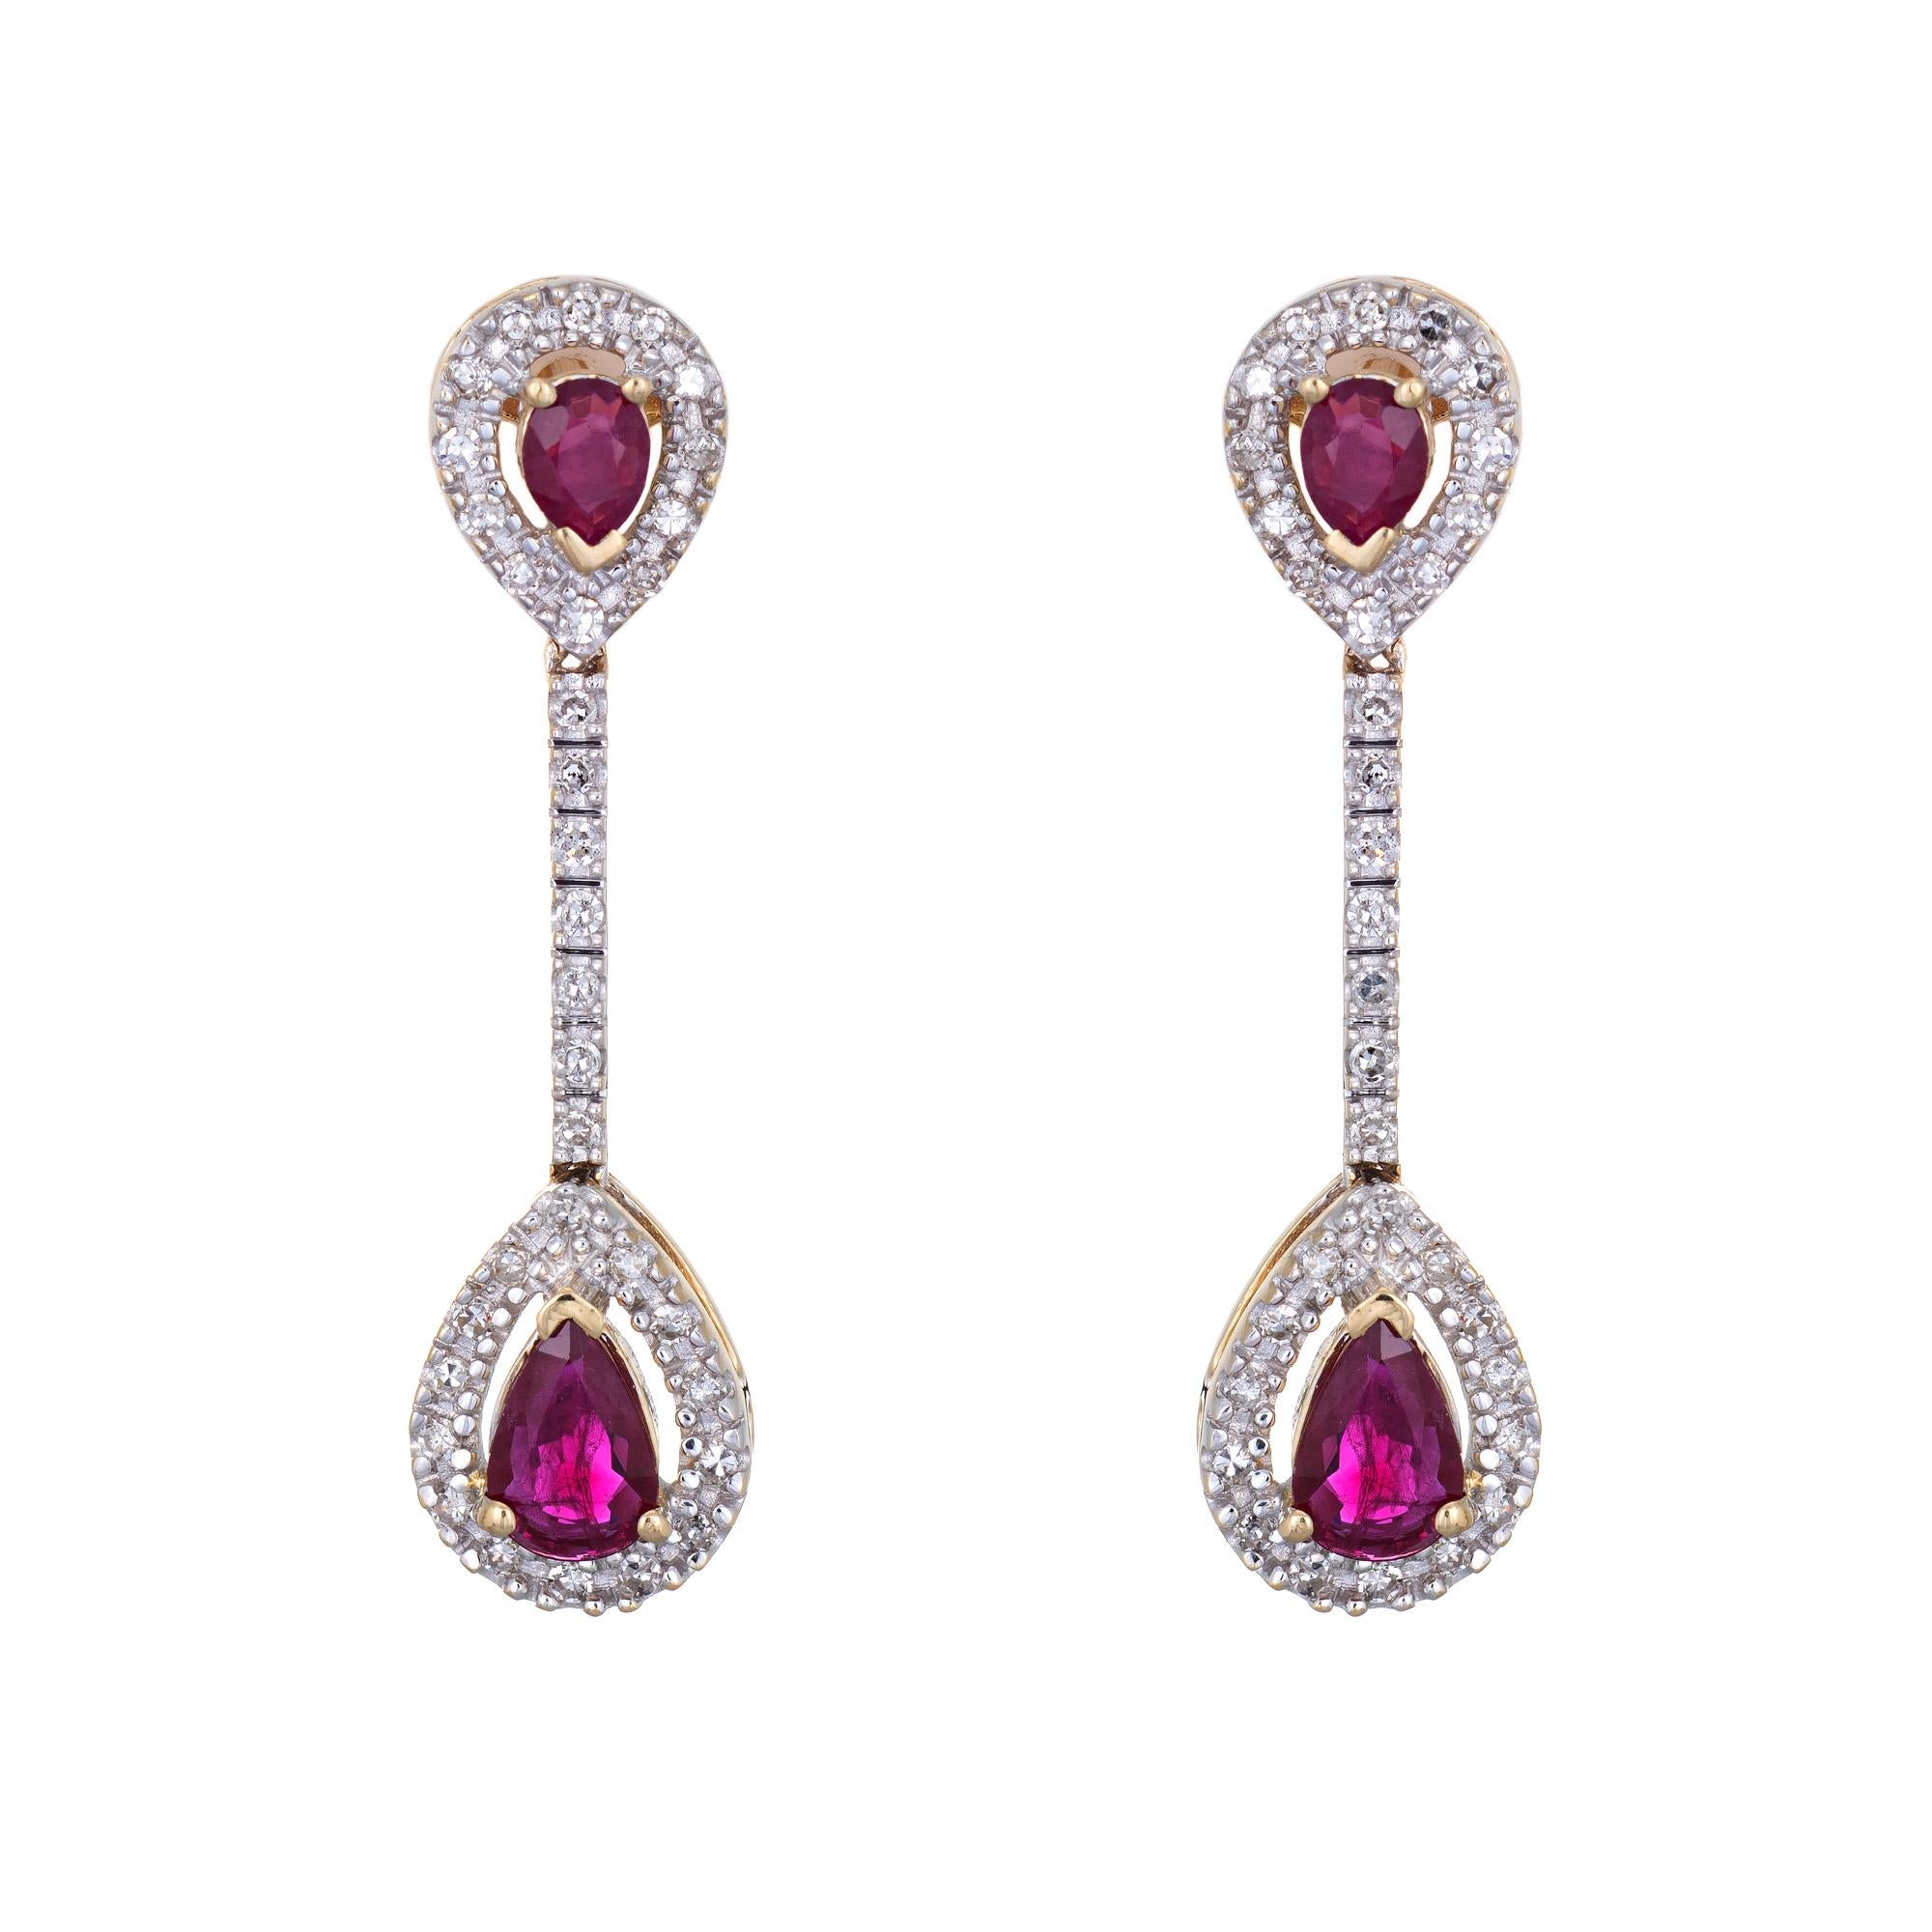 Pear Cut Ruby Diamond Earrings Vintage 14 Karat Gold Linear Drops Pear Shaped Jewelry